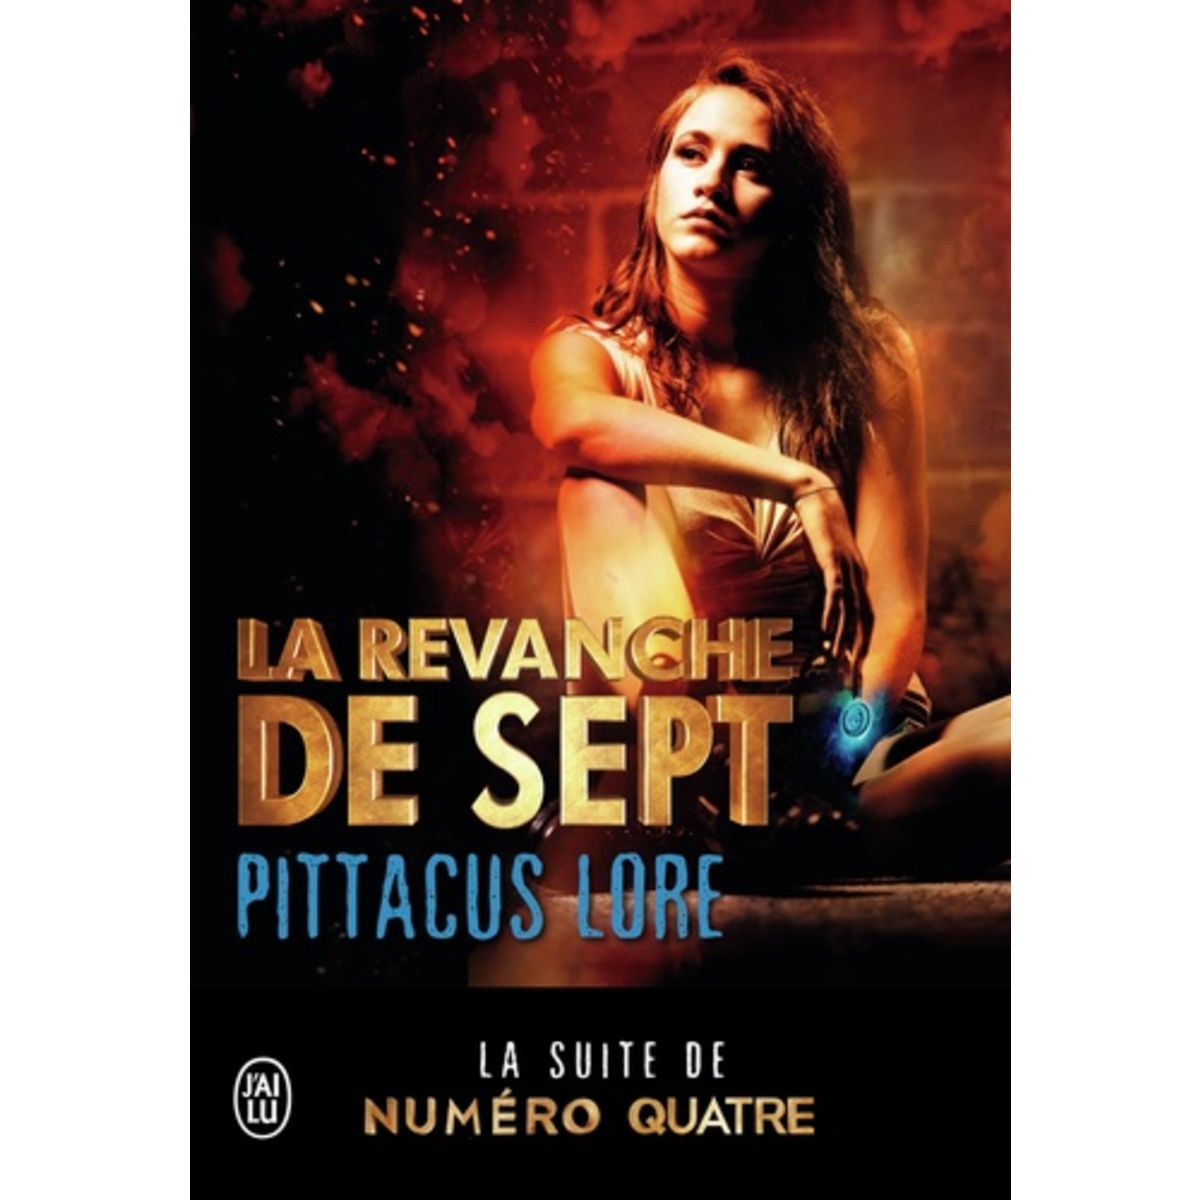  LA REVANCHE DE SEPT, Lore Pittacus